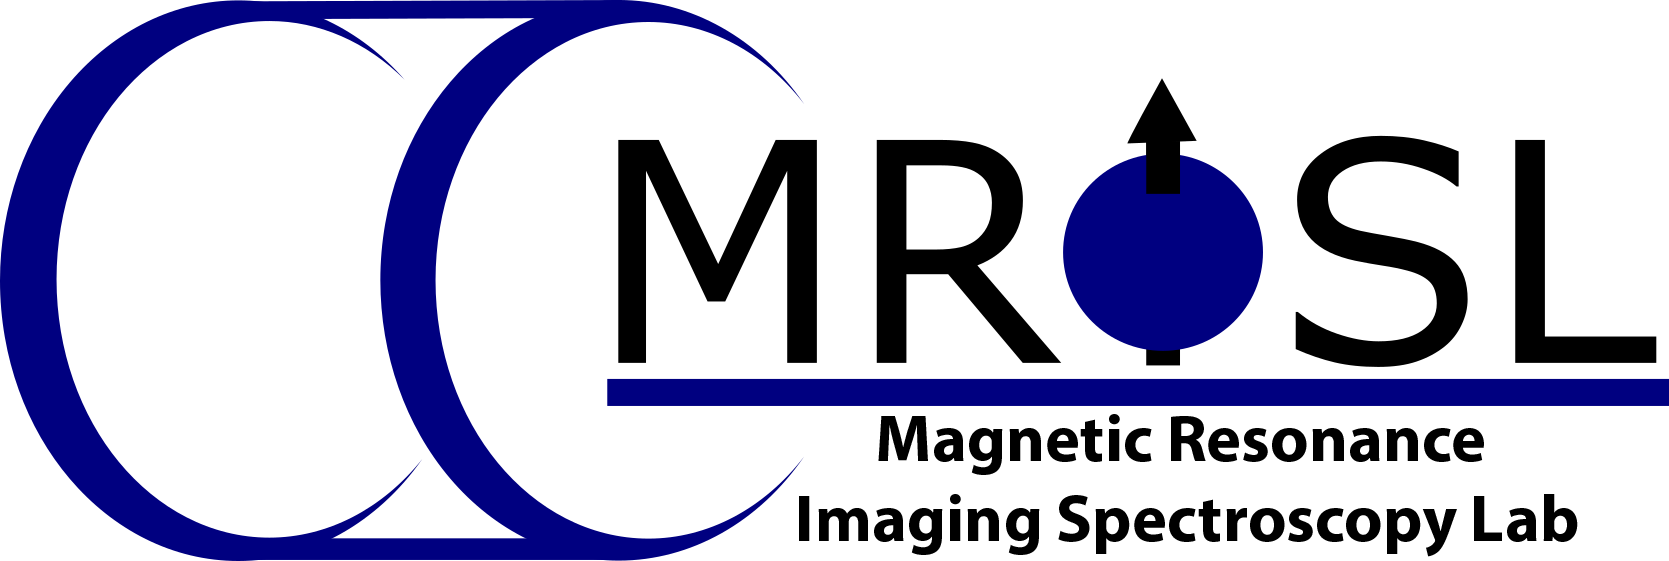 MRISL logo